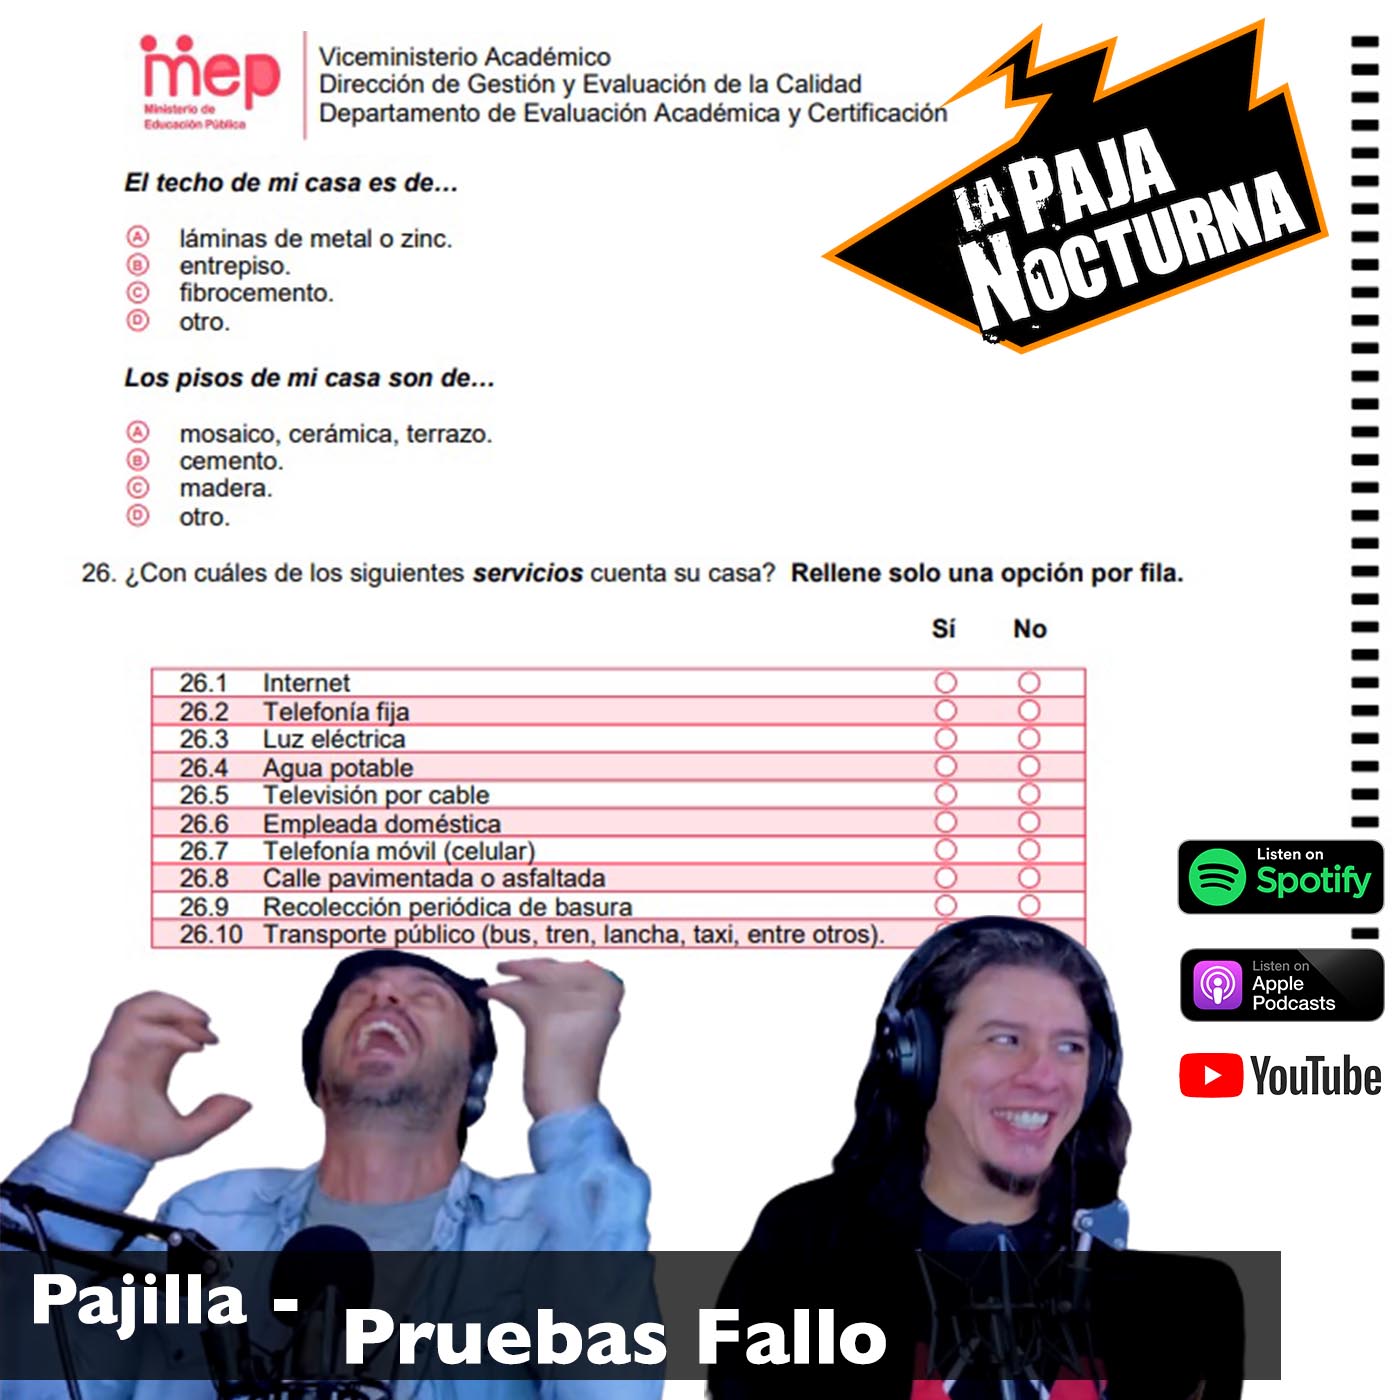 La Paja Nocturna Podcast CR Pajilla 99